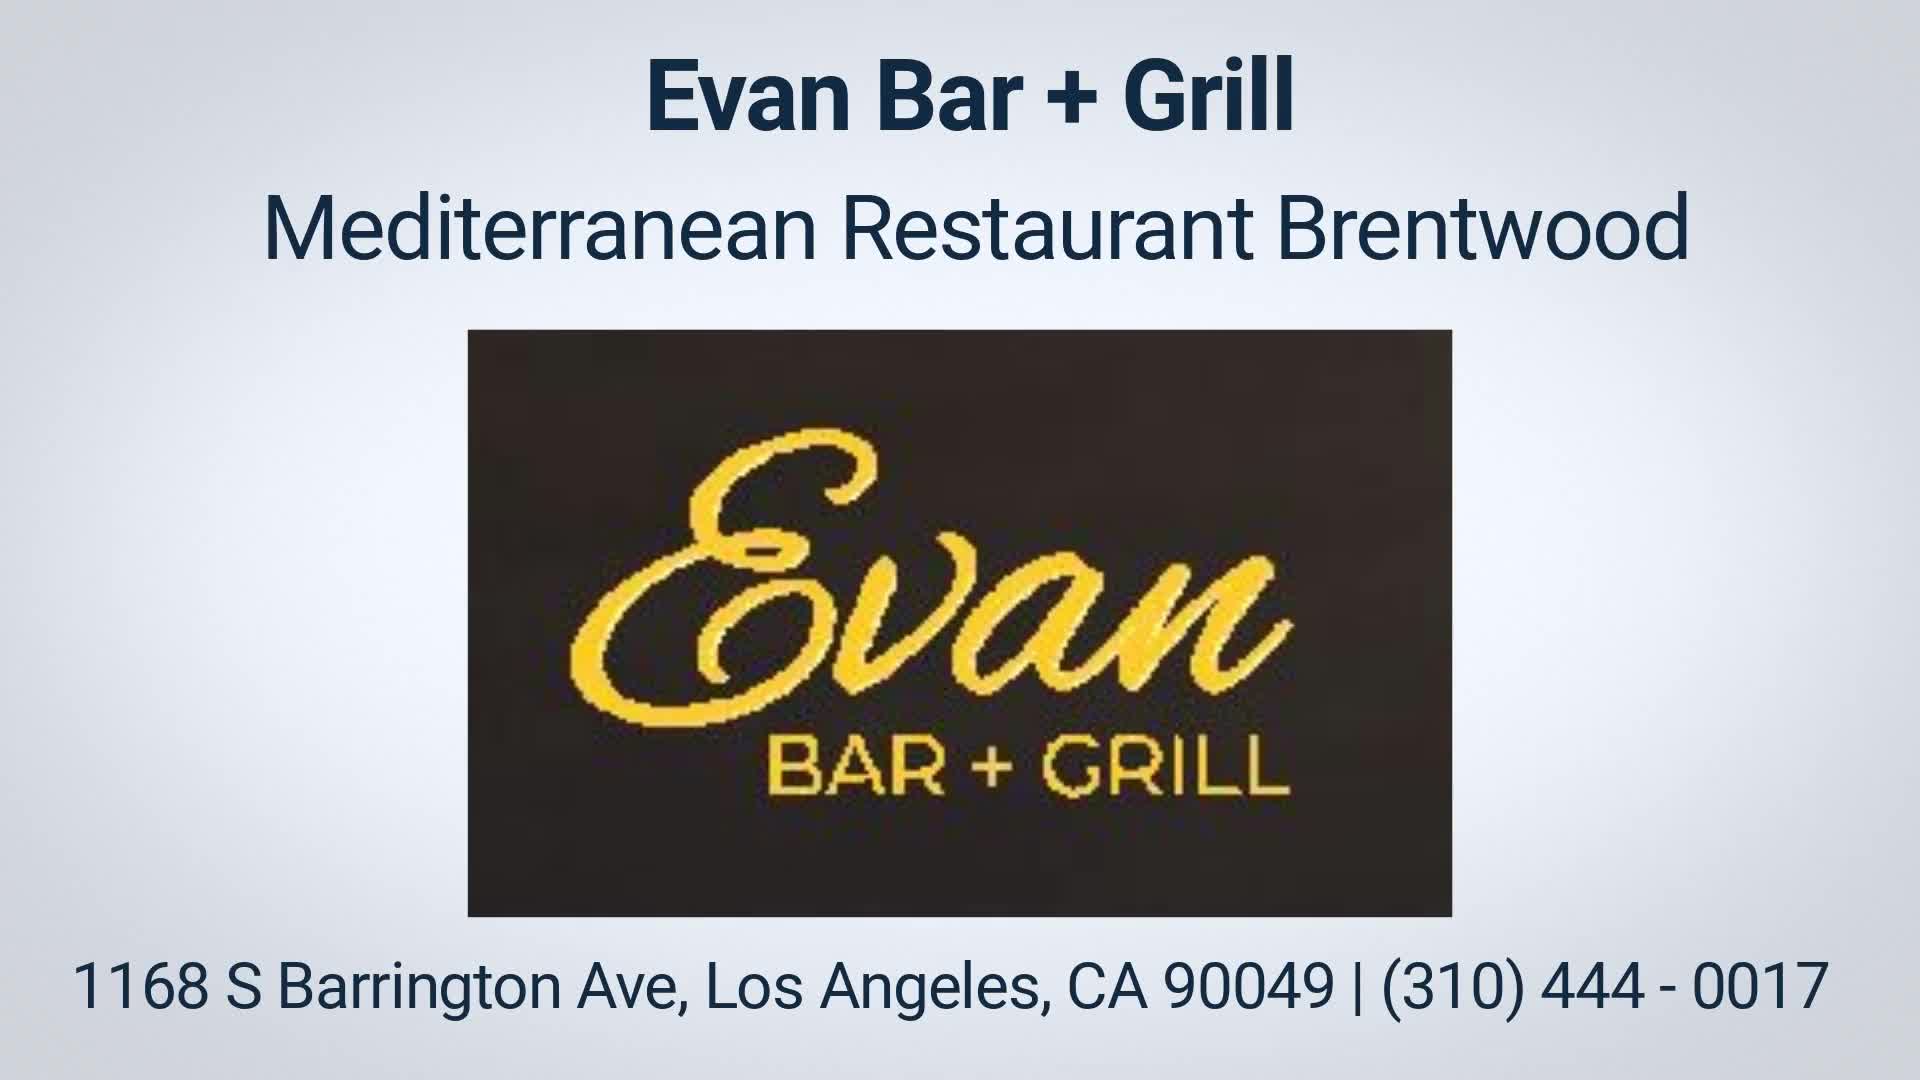 Evan Bar + Grill | Mediterranean Restaurant in Brentwood